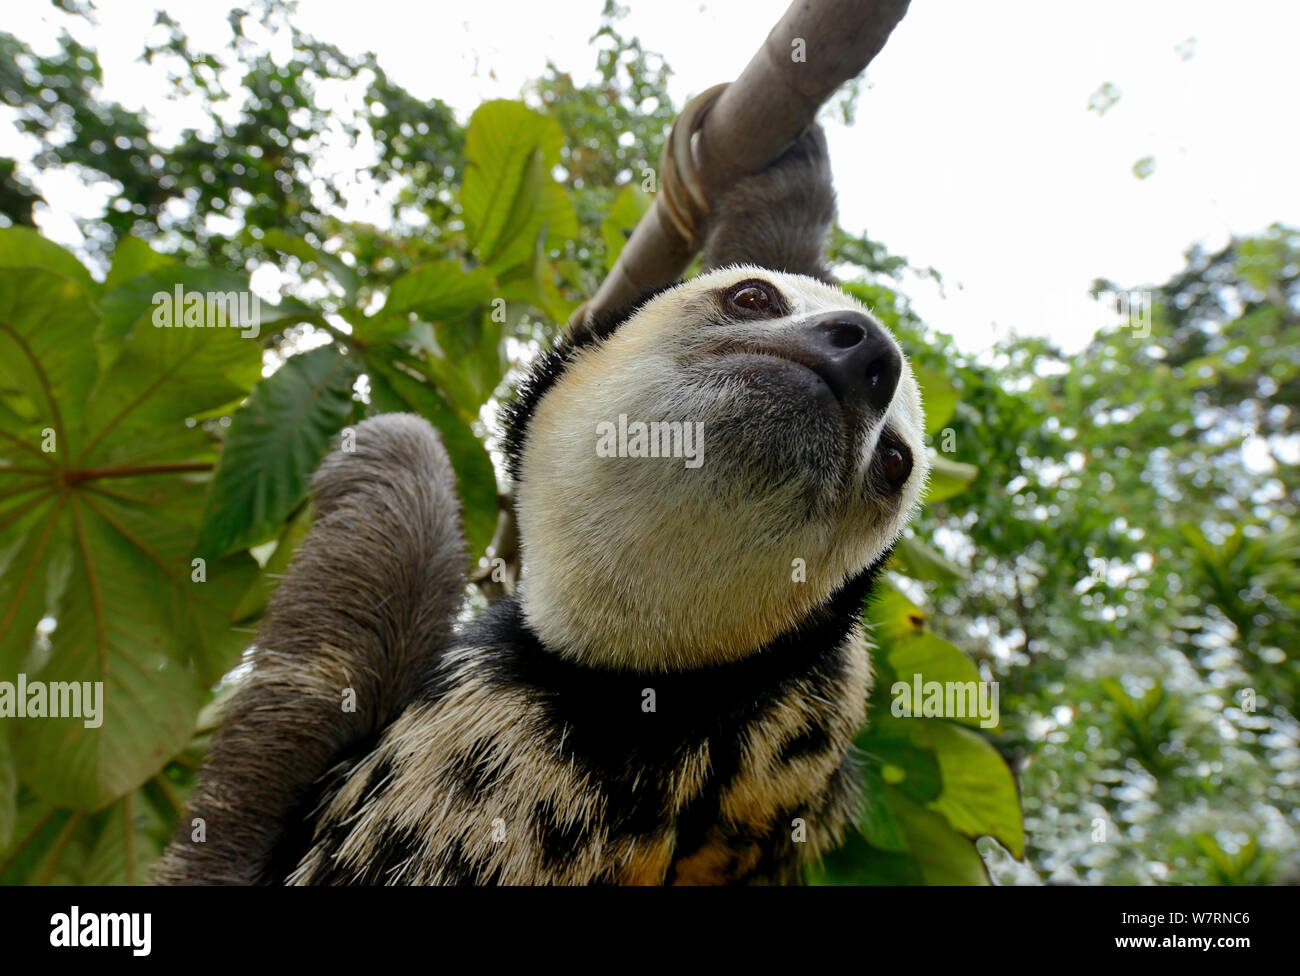 Paresseux à gorge pâle / Aï (Bradypus tridactylus) randonnées le long branch, en Guyane française. Banque D'Images